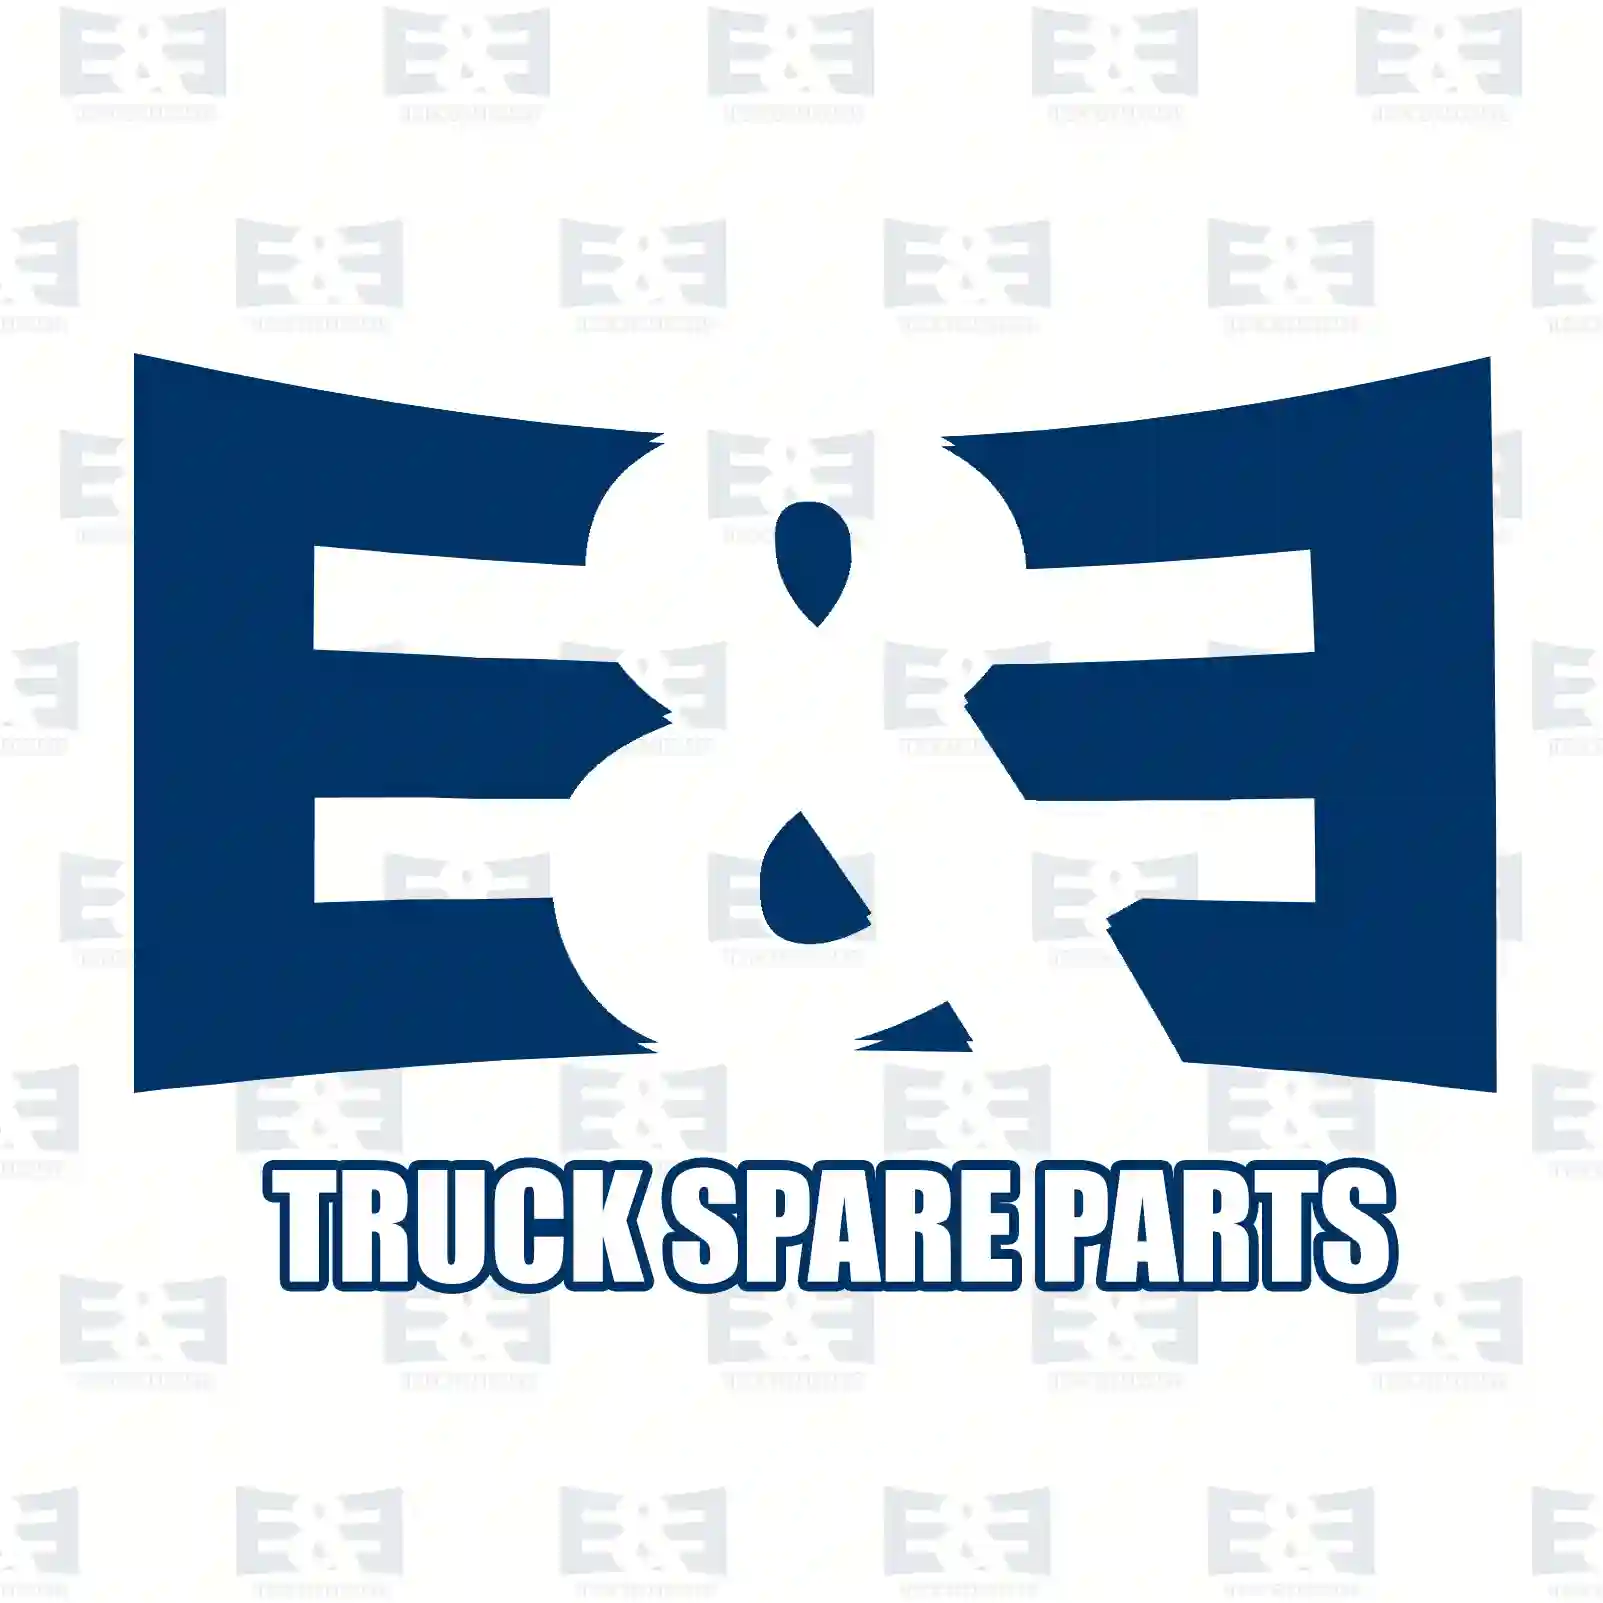 Synchronizer cone, 2E2278827, 7401668456, 1668454, 1668455, 1668456 ||  2E2278827 E&E Truck Spare Parts | Truck Spare Parts, Auotomotive Spare Parts Synchronizer cone, 2E2278827, 7401668456, 1668454, 1668455, 1668456 ||  2E2278827 E&E Truck Spare Parts | Truck Spare Parts, Auotomotive Spare Parts